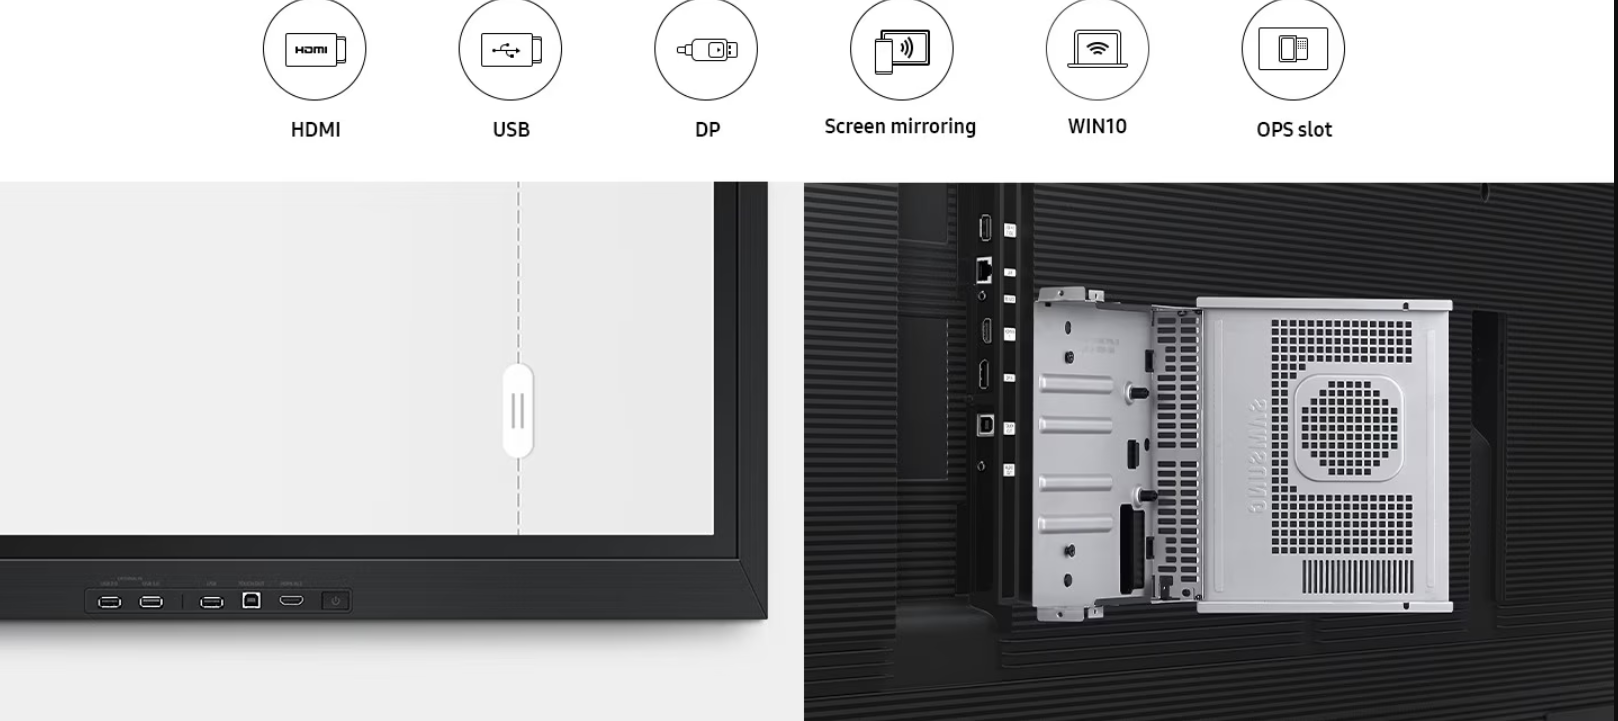 Màn hình tương tác Samsung Flip 85 inch cho phép kết nối dễ dàng với nhiều thiết bị